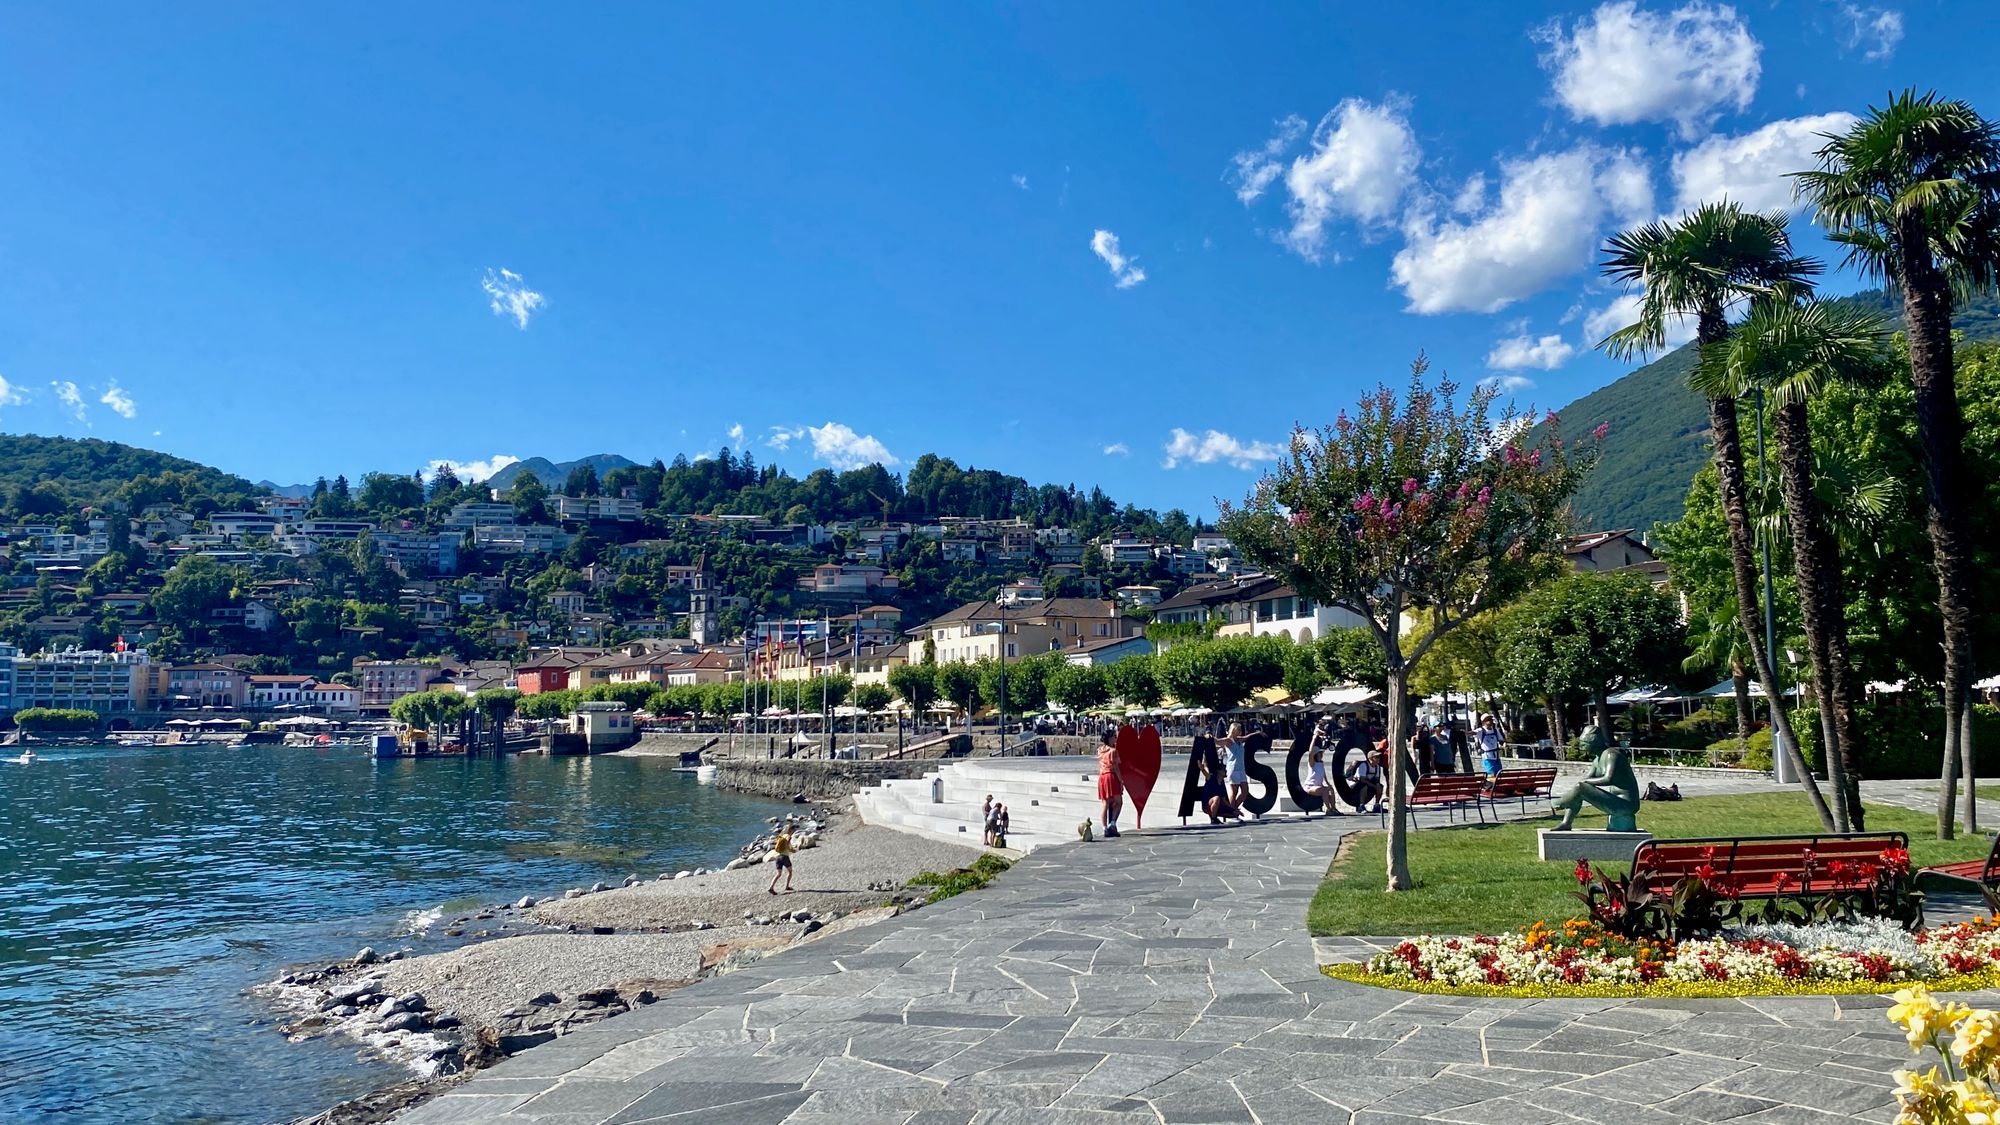 View of ascona promenade by Lake Maggiore